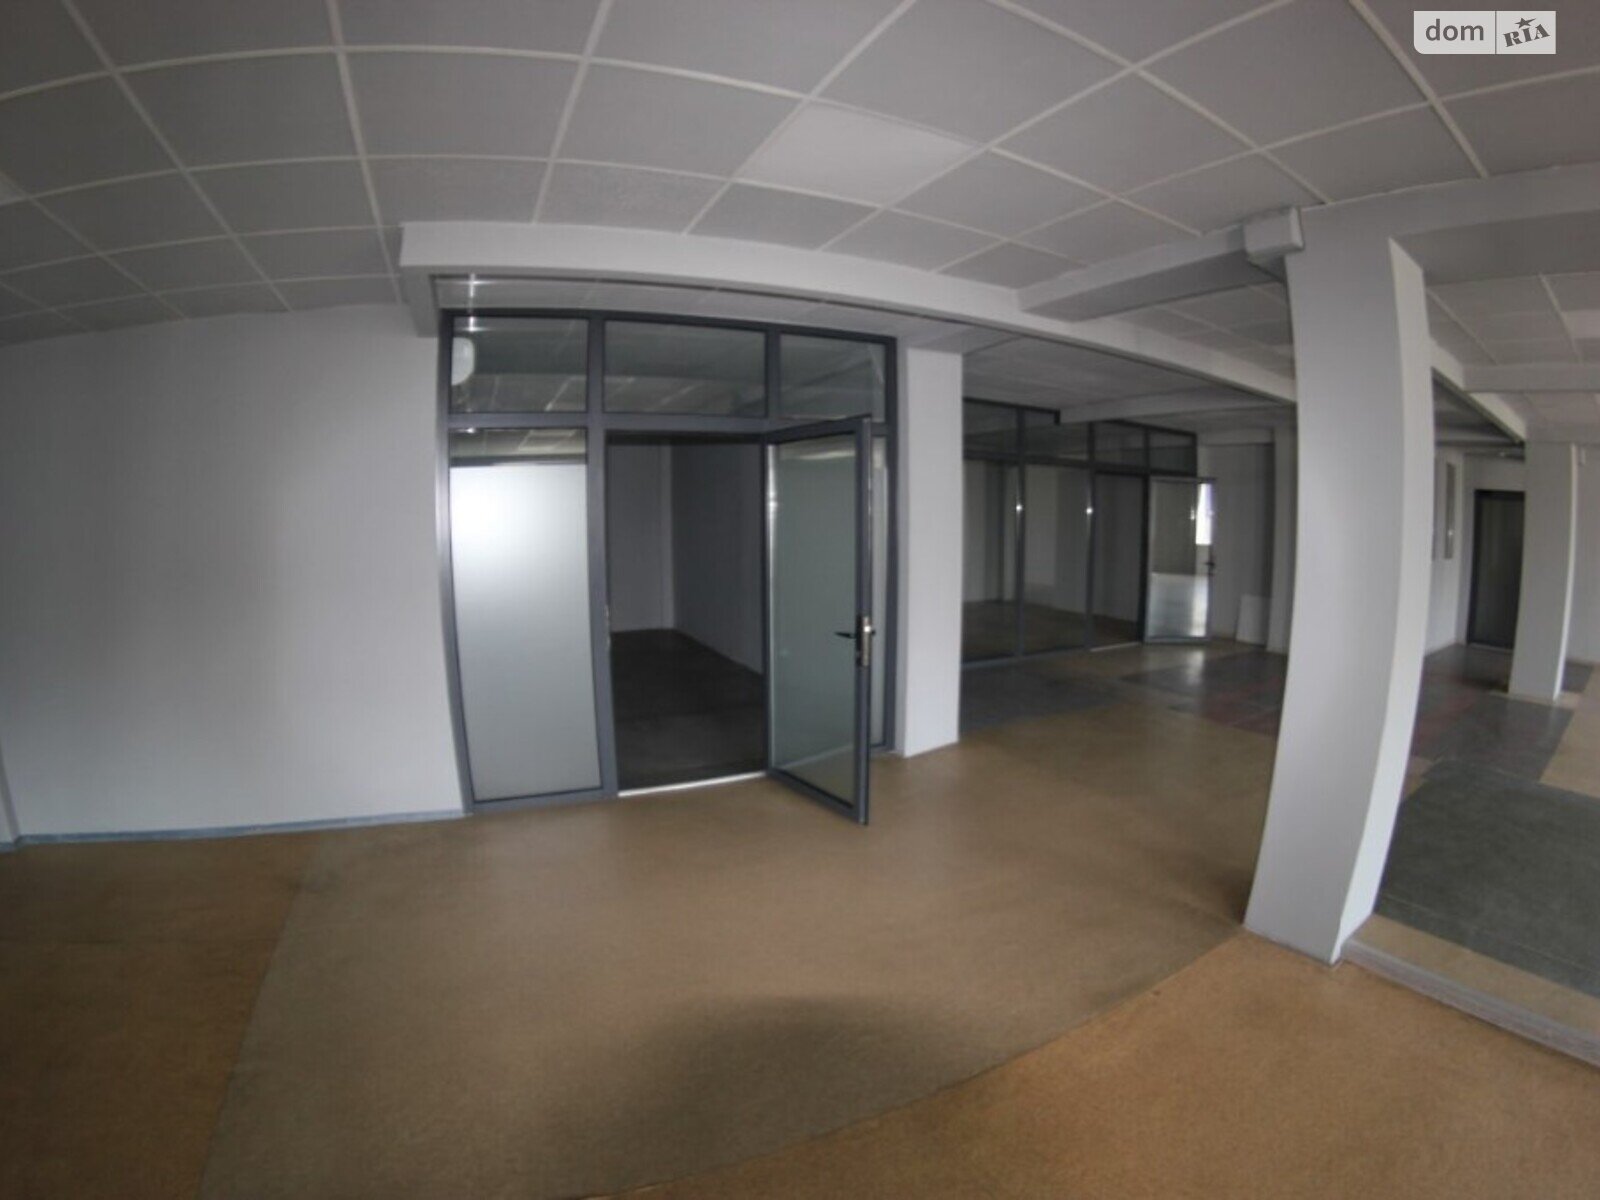 Аренда офисного помещения в Днепре, Ольги княгини улица 22, помещений - 4, этаж - 2 фото 1